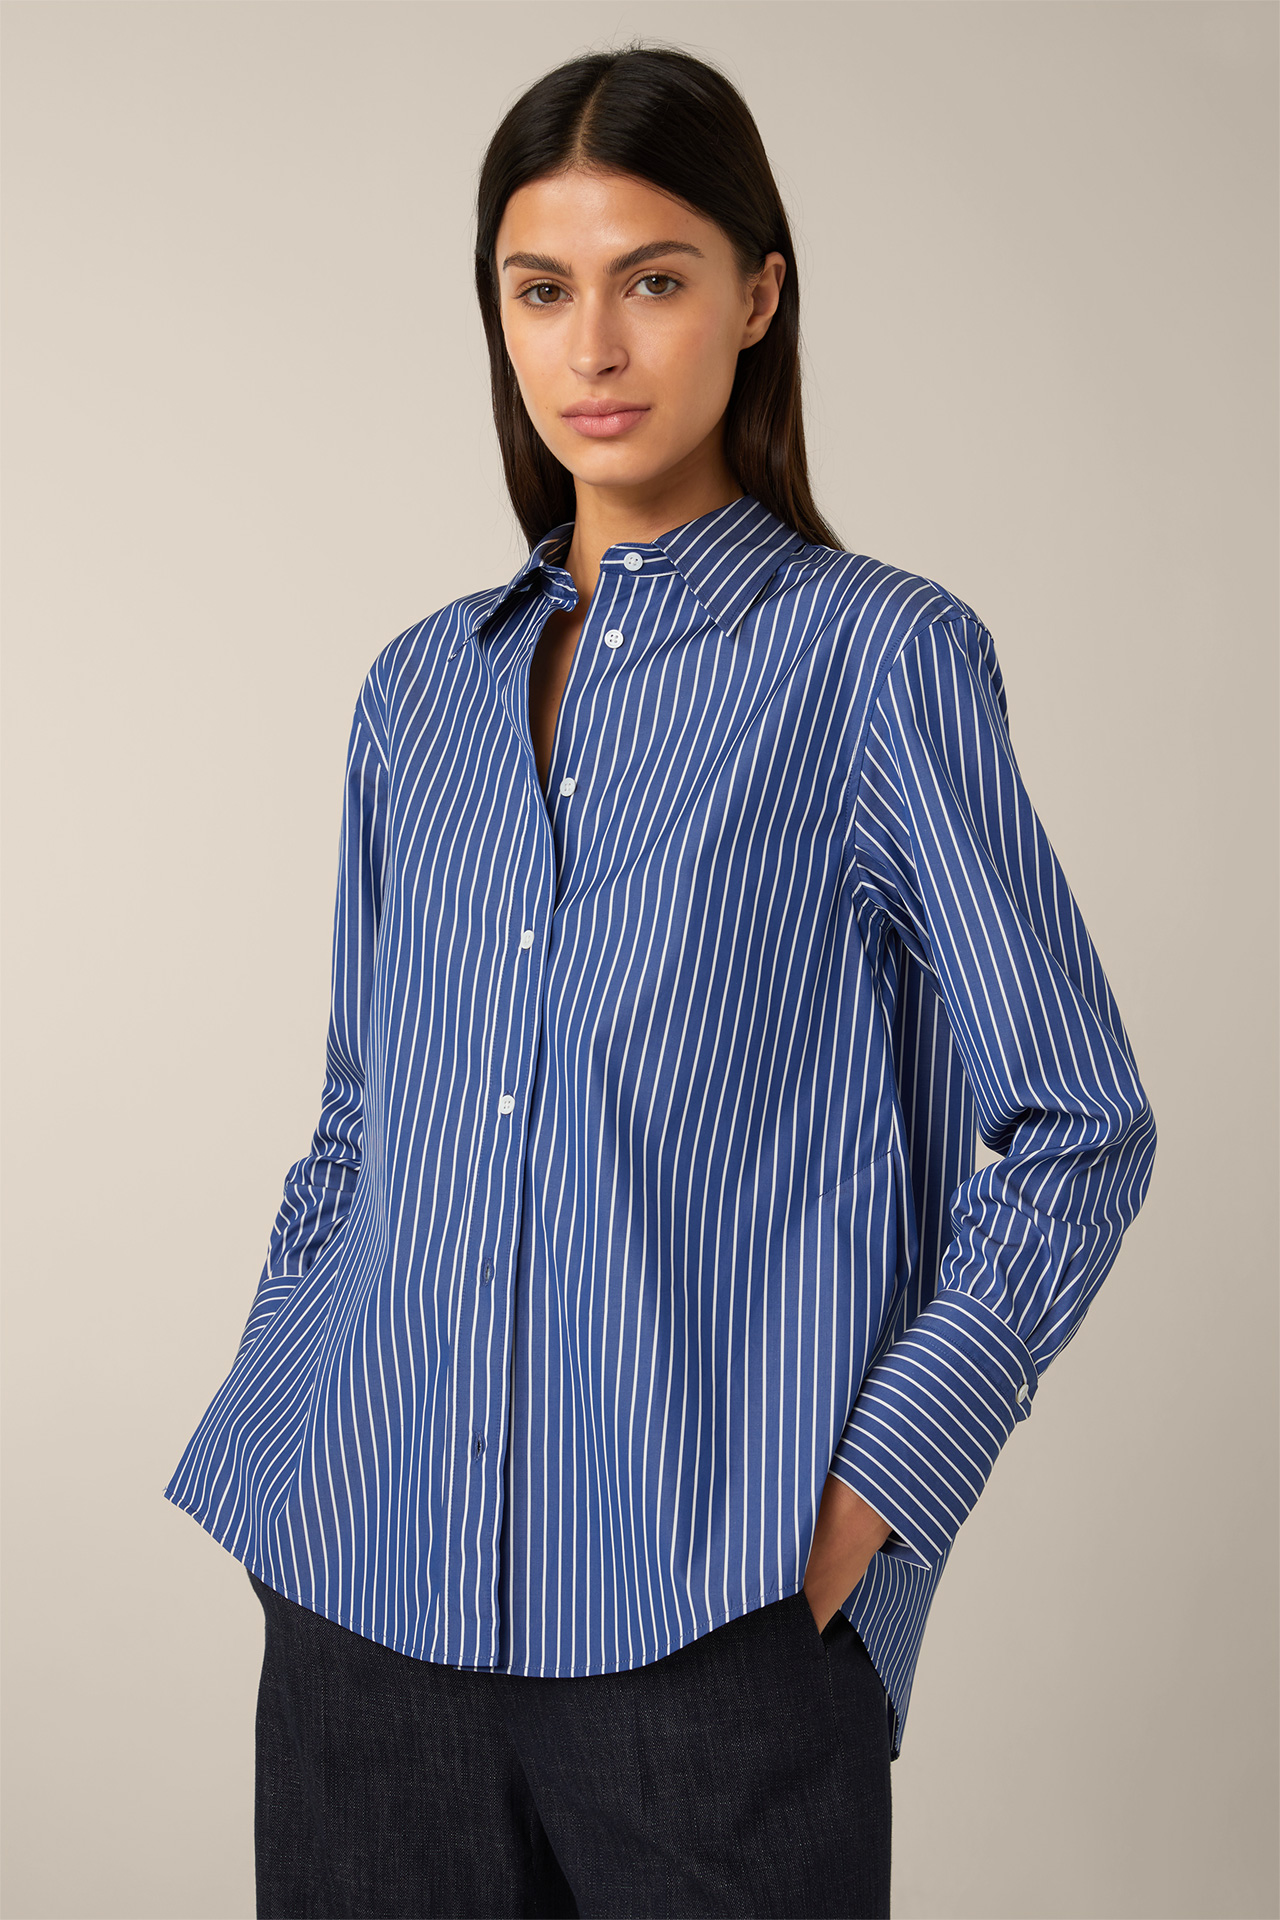 in gestreift windsor. Blau-Weiß Online-Shop Popeline-Baumwoll-Streifen-Hemd-Bluse - im